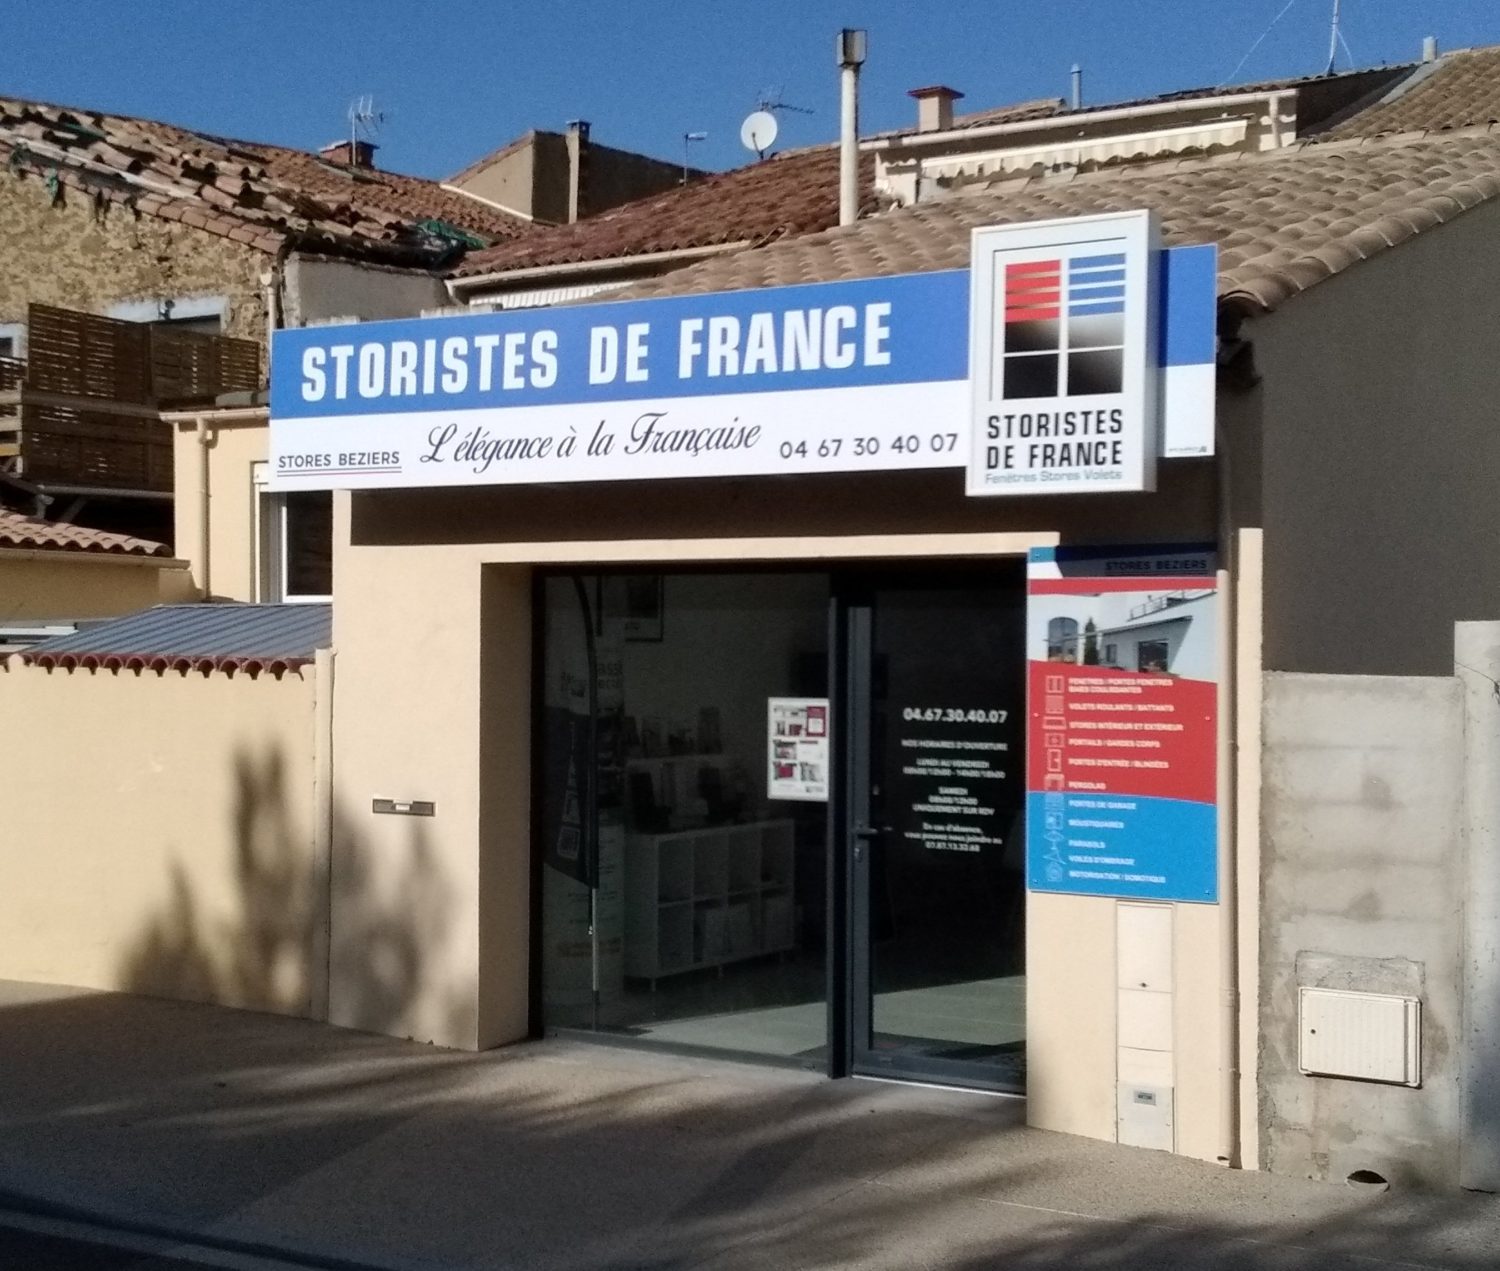 Storistes de France – Stores Beziers-jpg